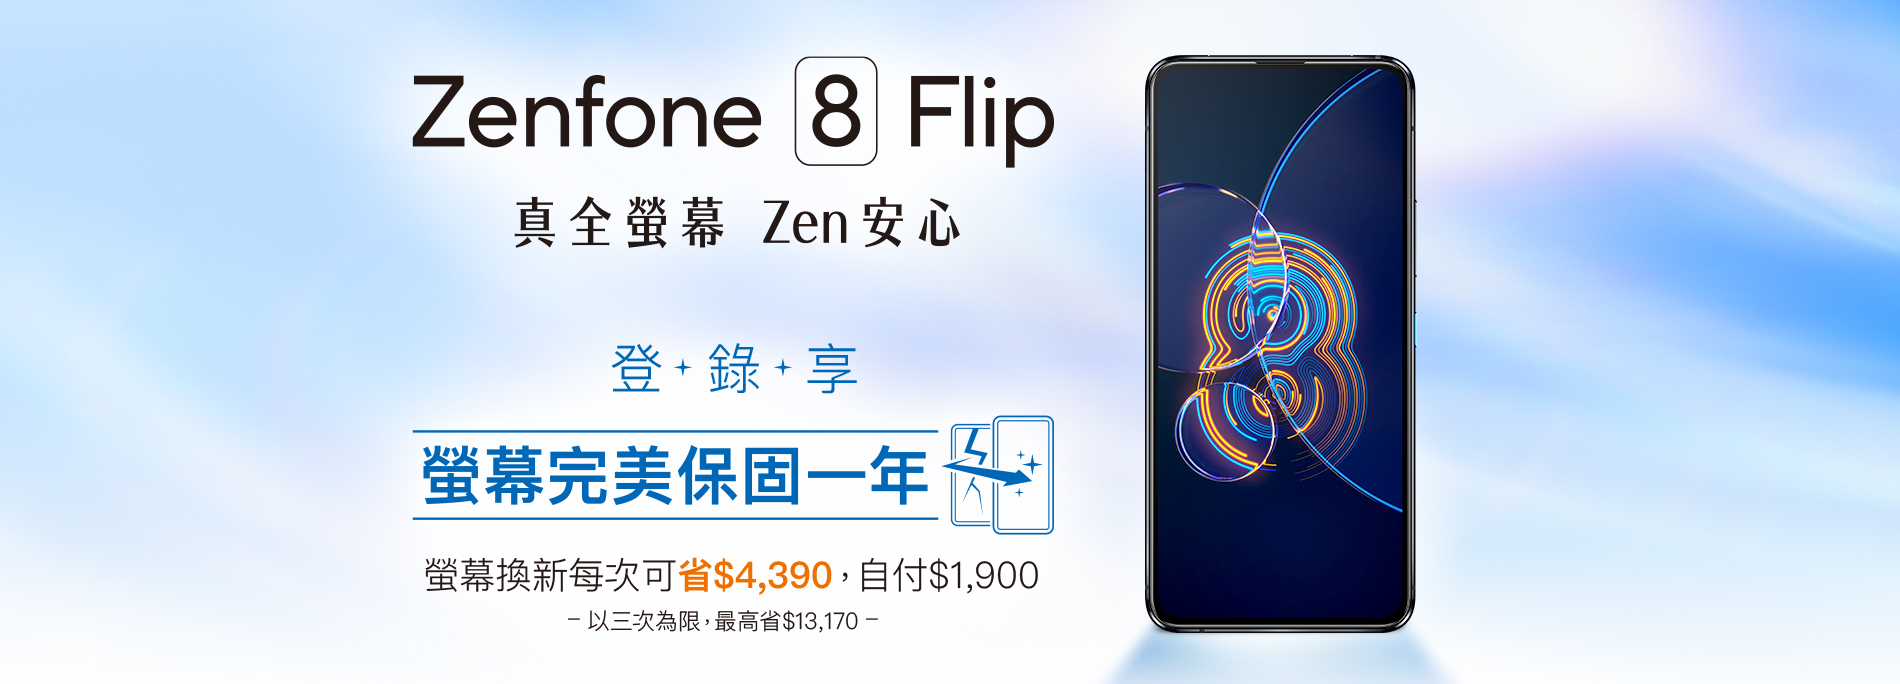 【真全螢幕Zen安心】Zenfone 8 Flip登錄送螢幕完美保固一年 螢幕換新每次可省$4,390